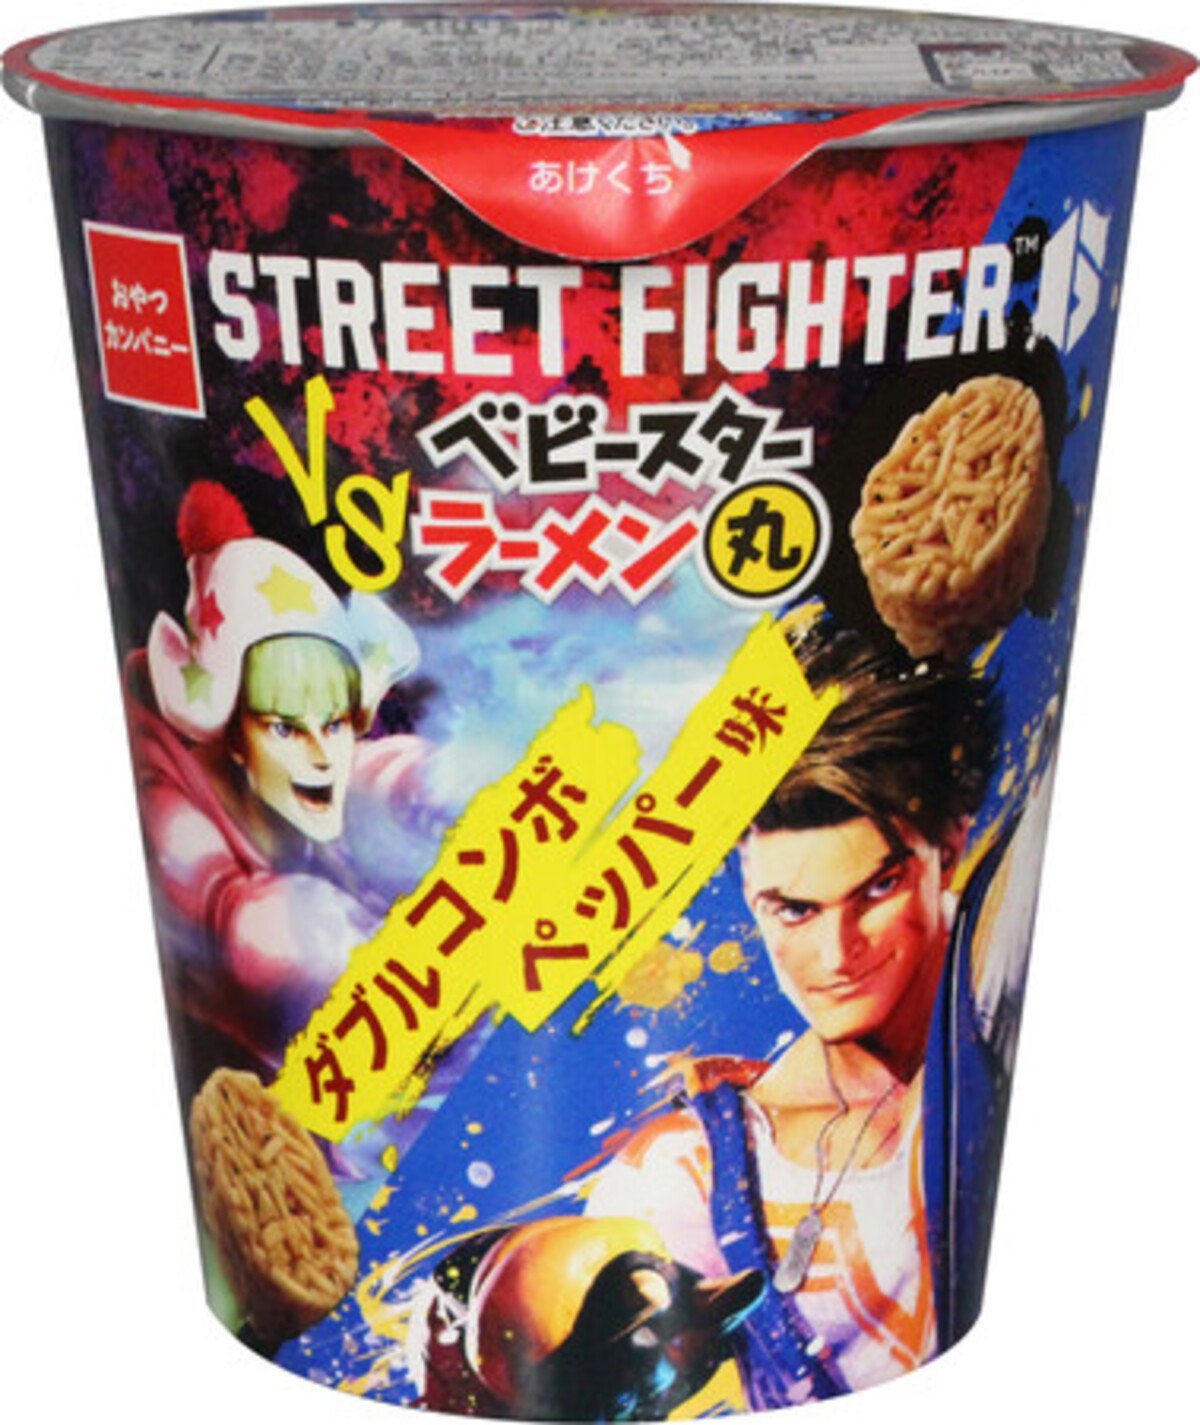 STREET FIGHTER vs ベビースターラーメン丸(ダブルコンボペッパー味)